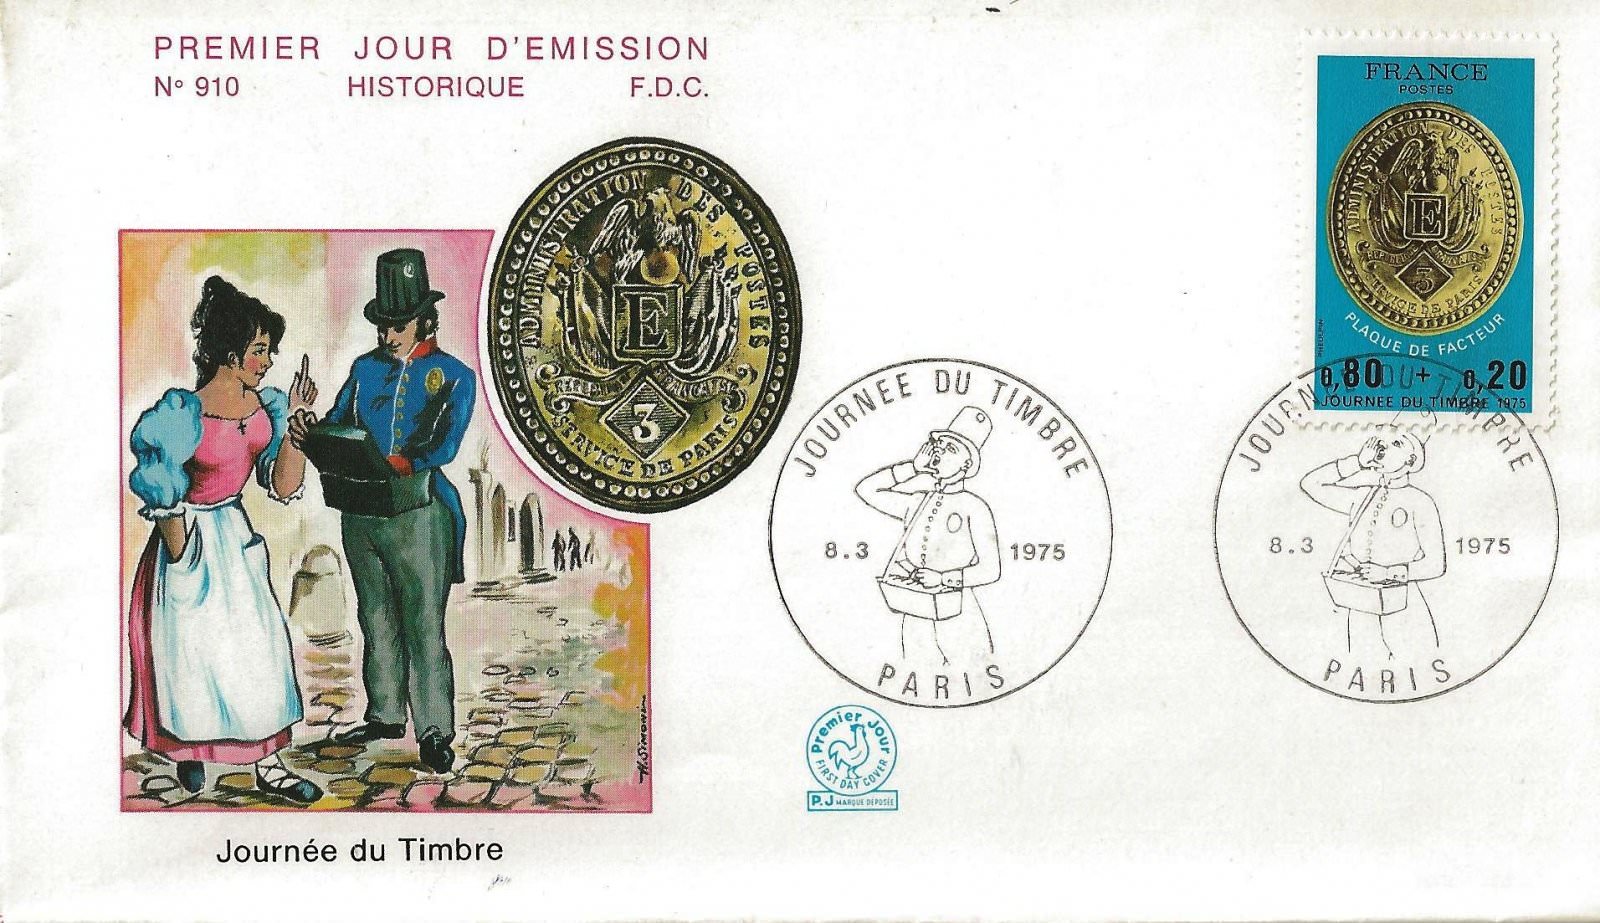 1975 journee du timbre 910